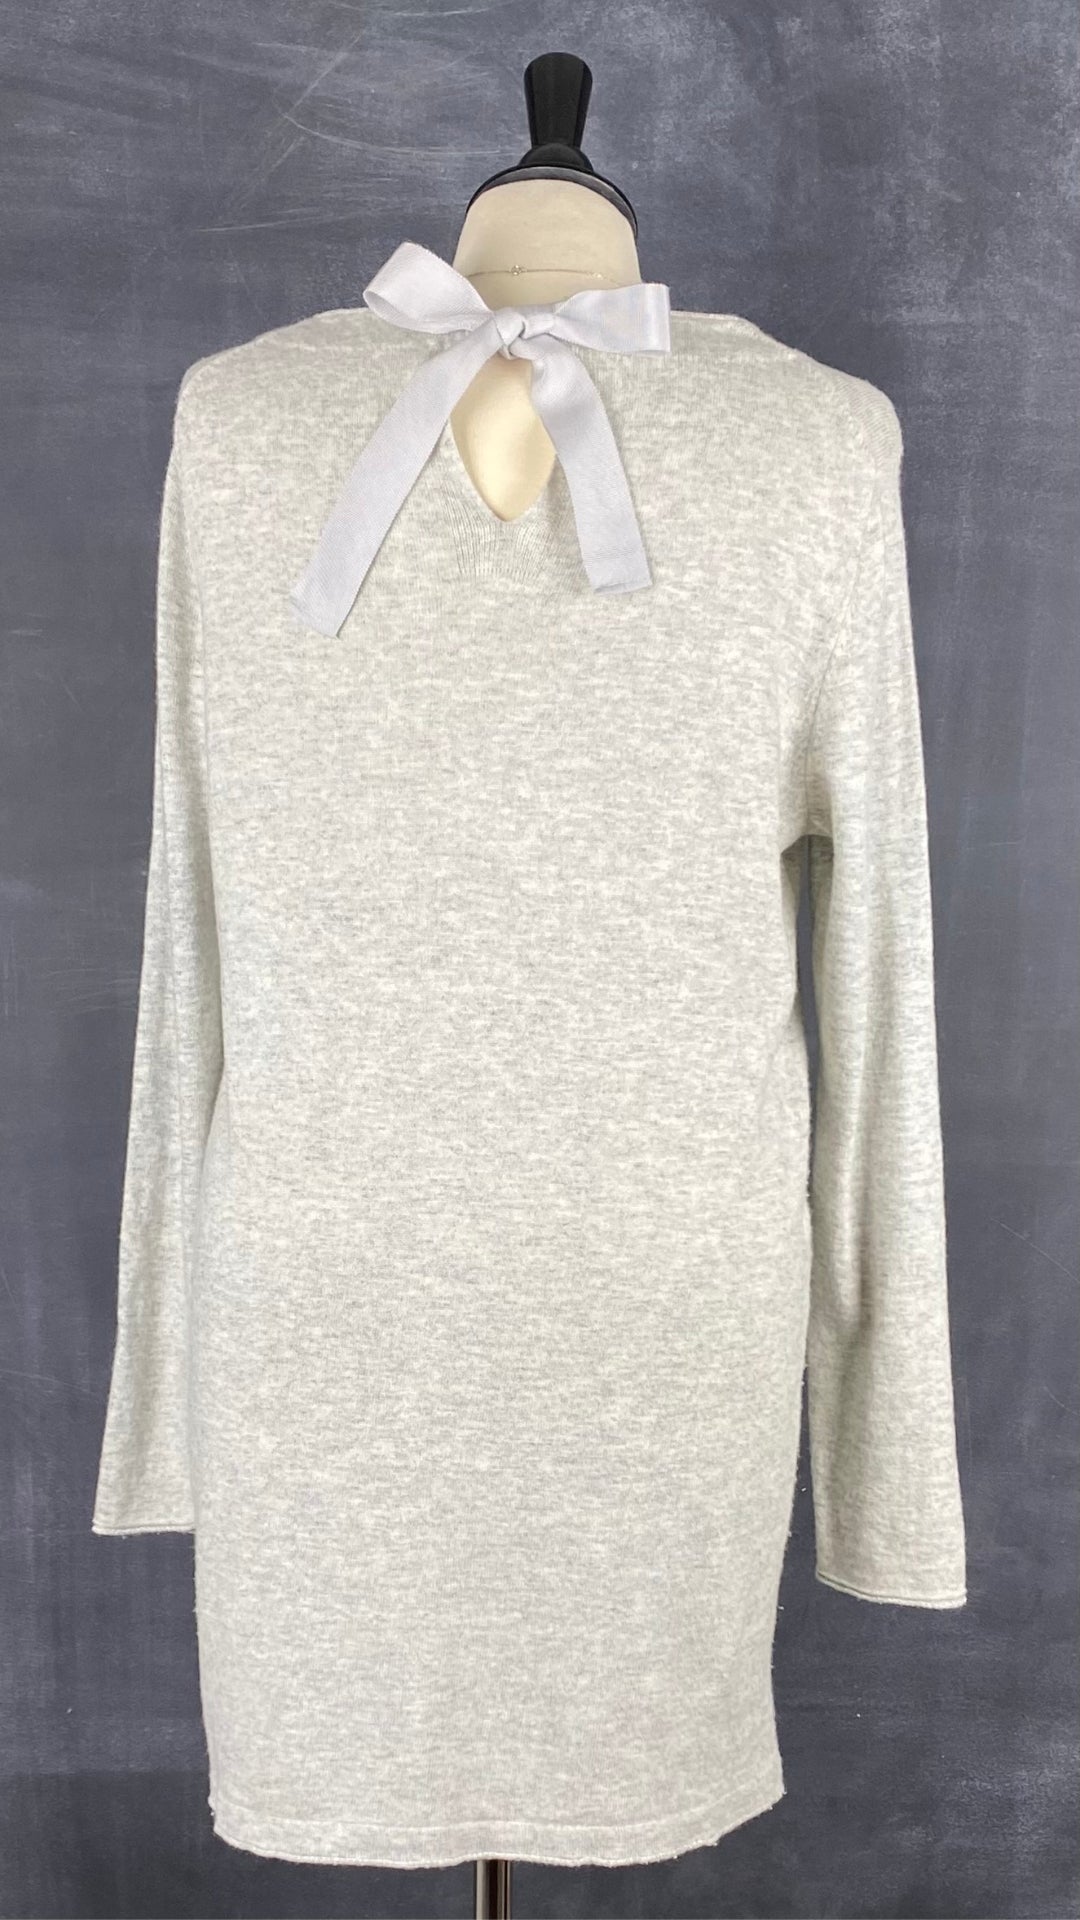 Chandail long en tricot doux gris beige Oui, taille 10 (environ medium). Vue de dos.